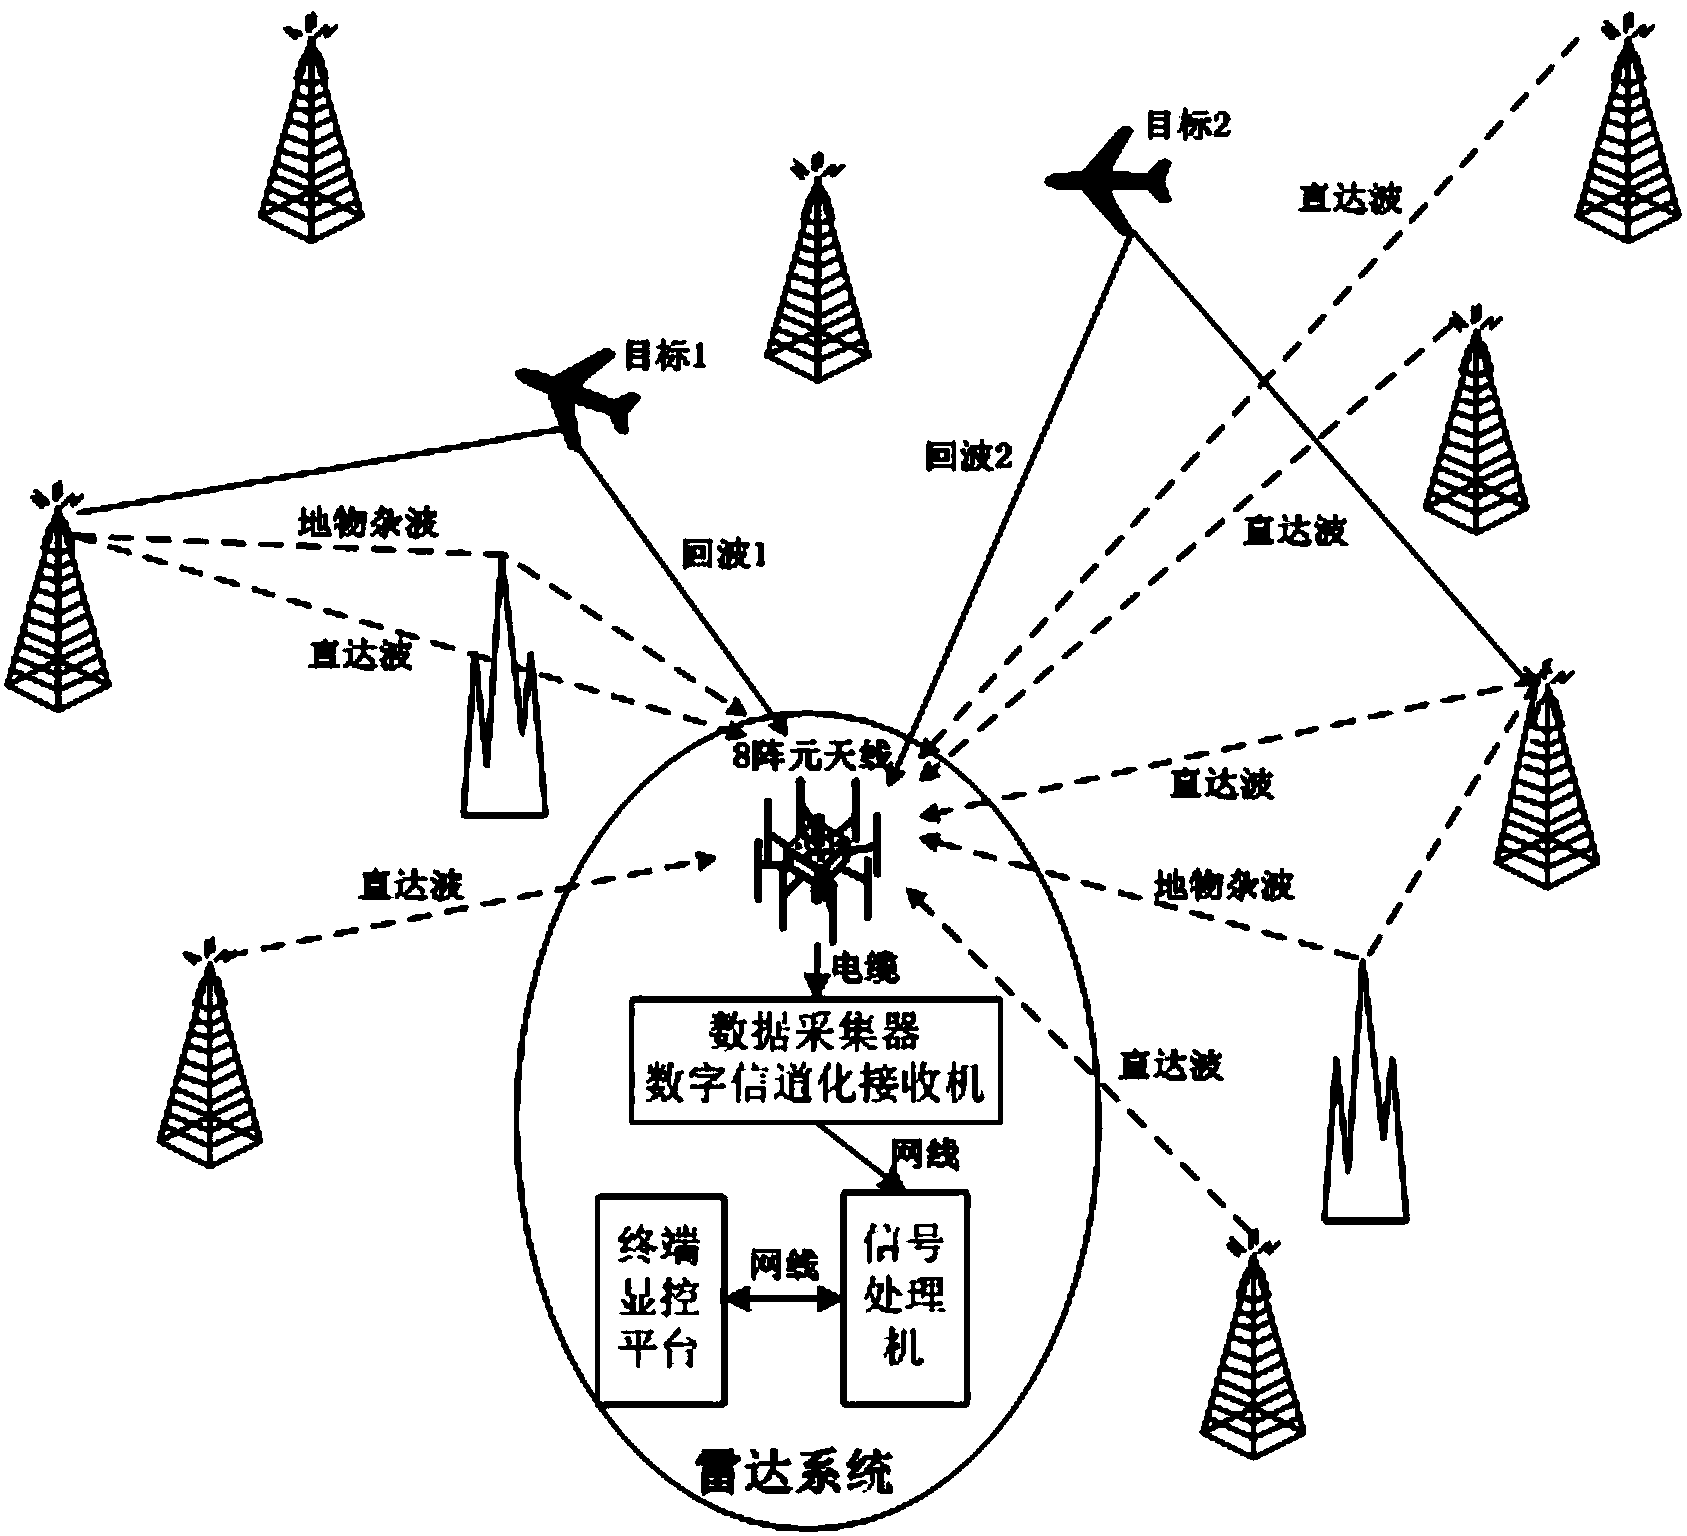 Outer transmitter-based radar target track processing method based on clustering